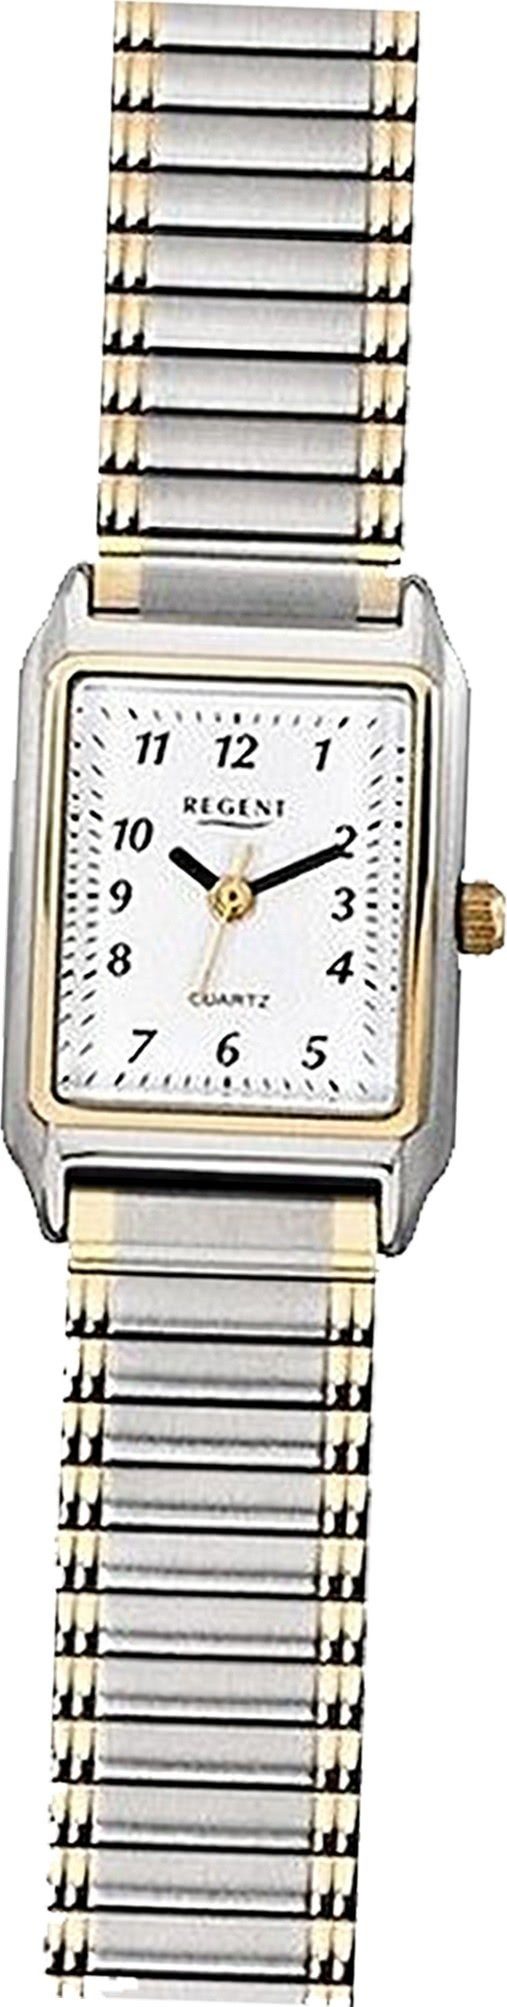 Regent Quarzuhr Regent Metall Damen Uhr F-460 Analog, Damenuhr Metallarmband silber, gold, eckiges Gehäuse, klein (ca. 26mm)